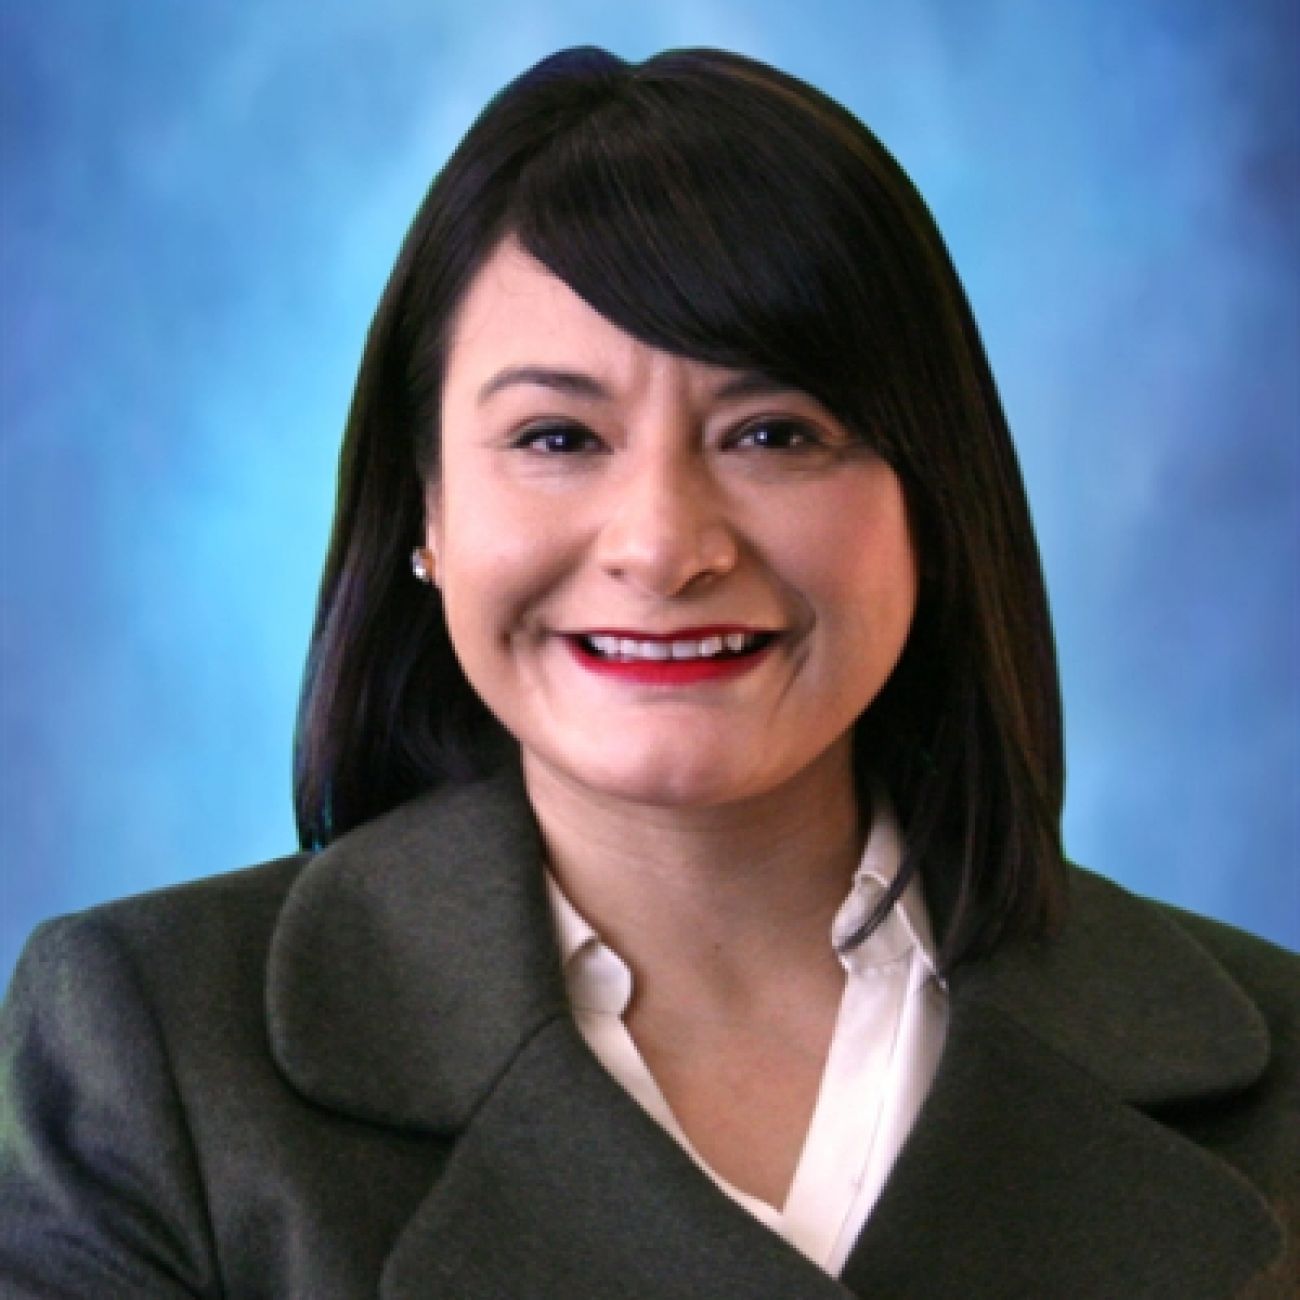 Grand Rapids City Commissioner Milinda Ysasi